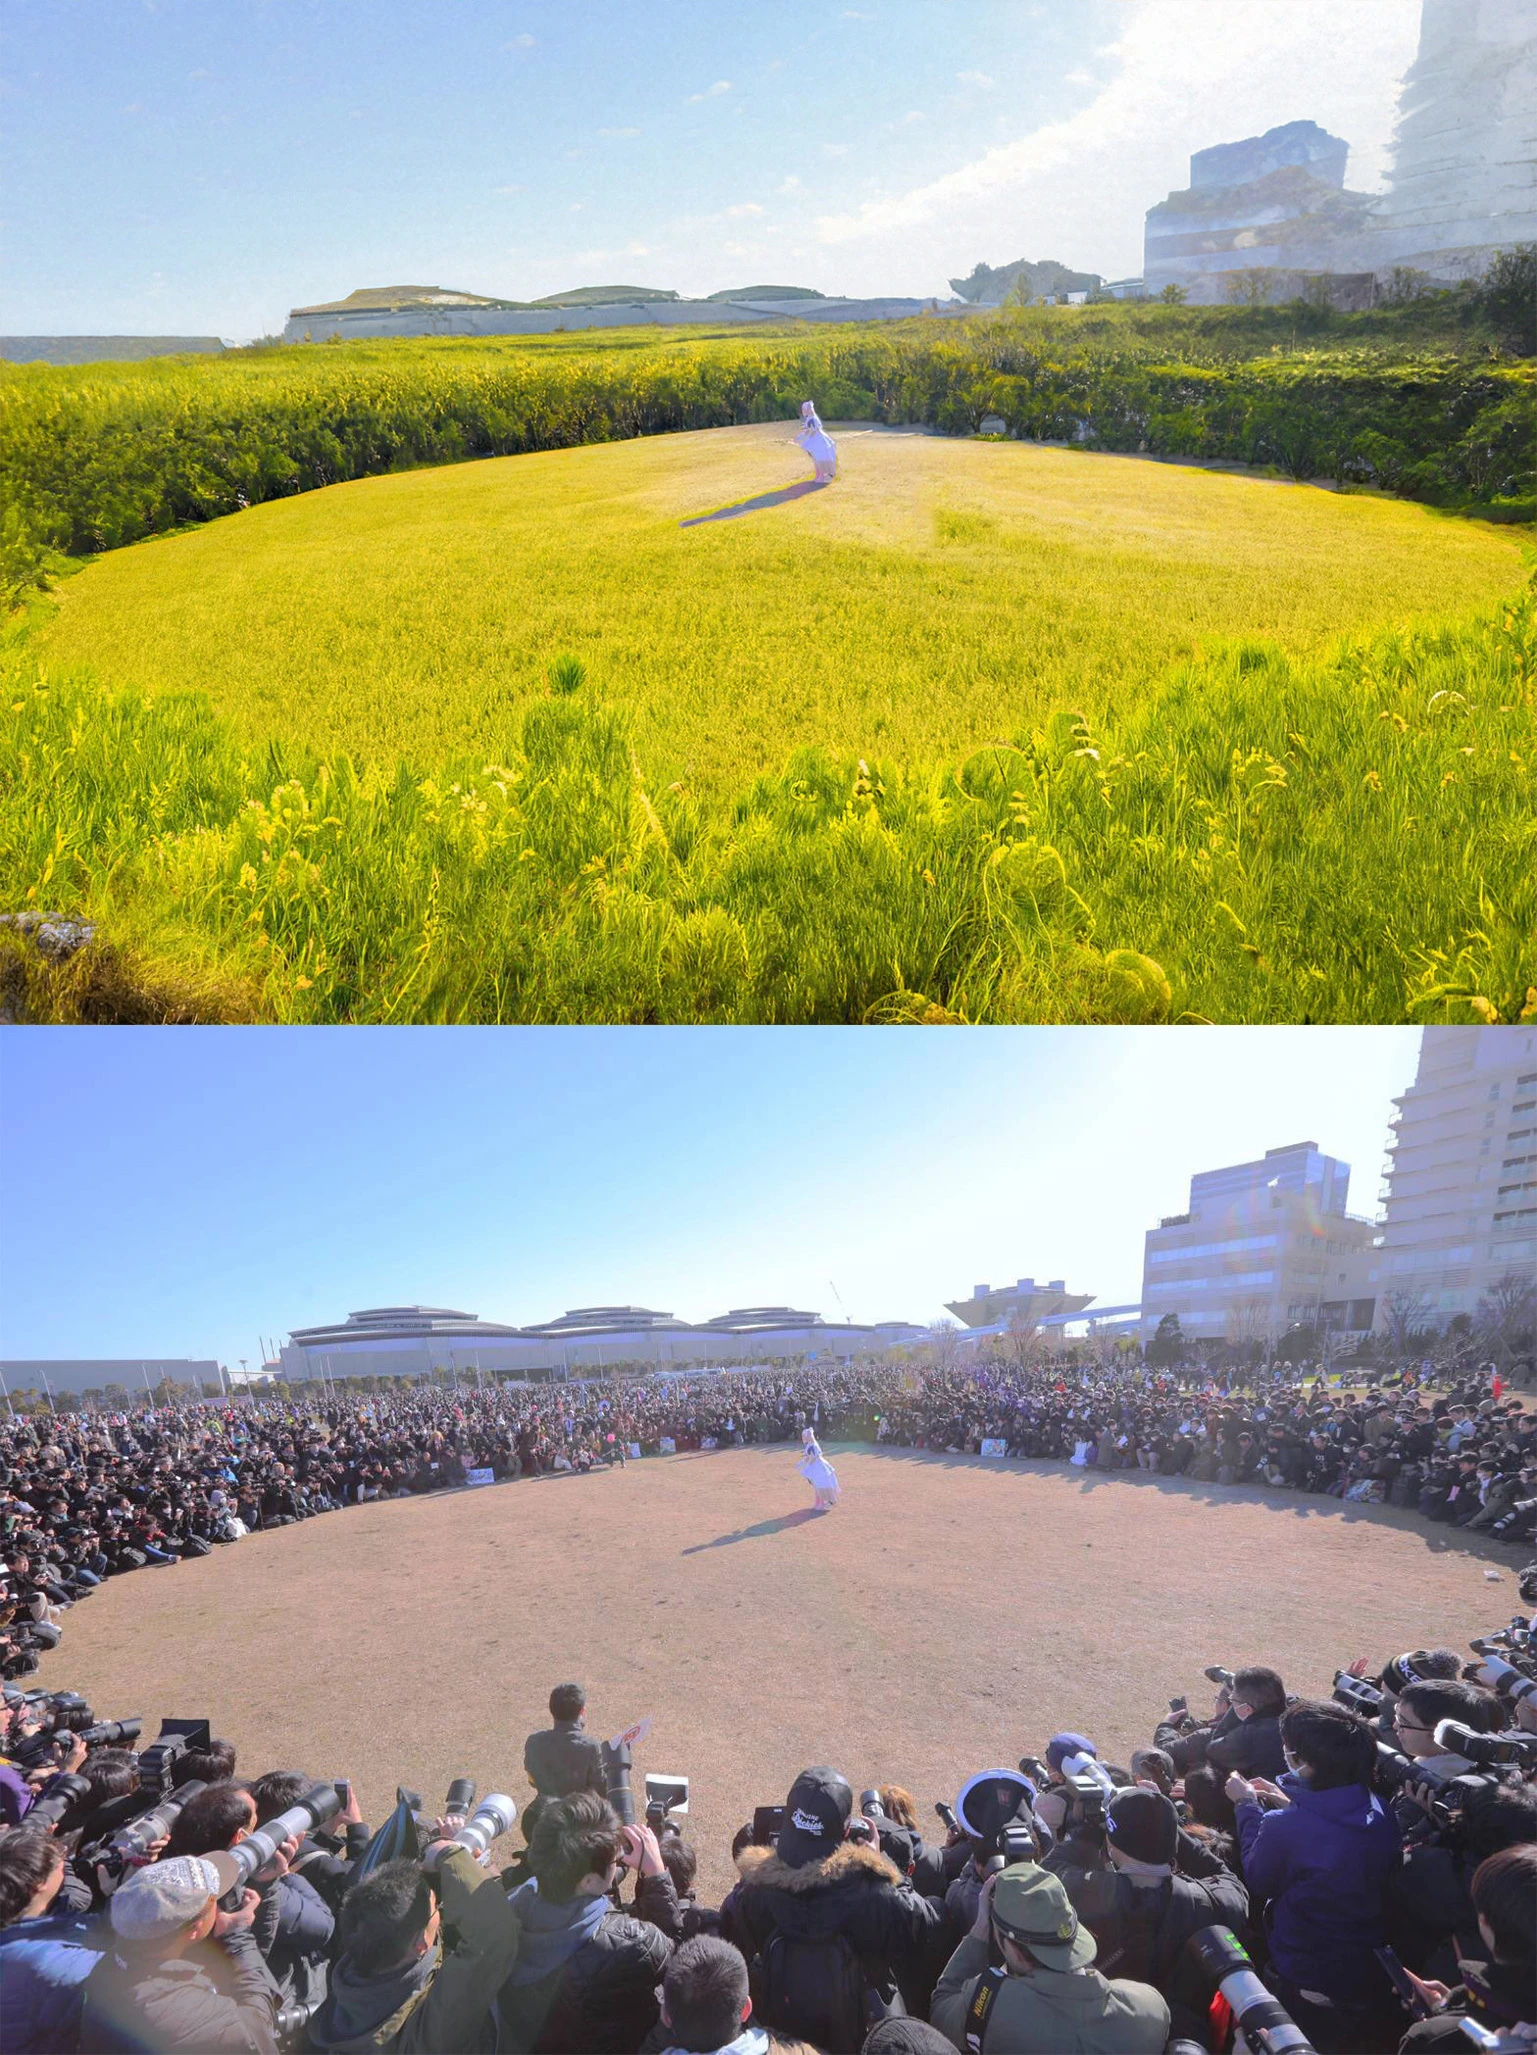 「えなこりんぐ」の囲みが大草原に　Photoshop新機能が驚異的